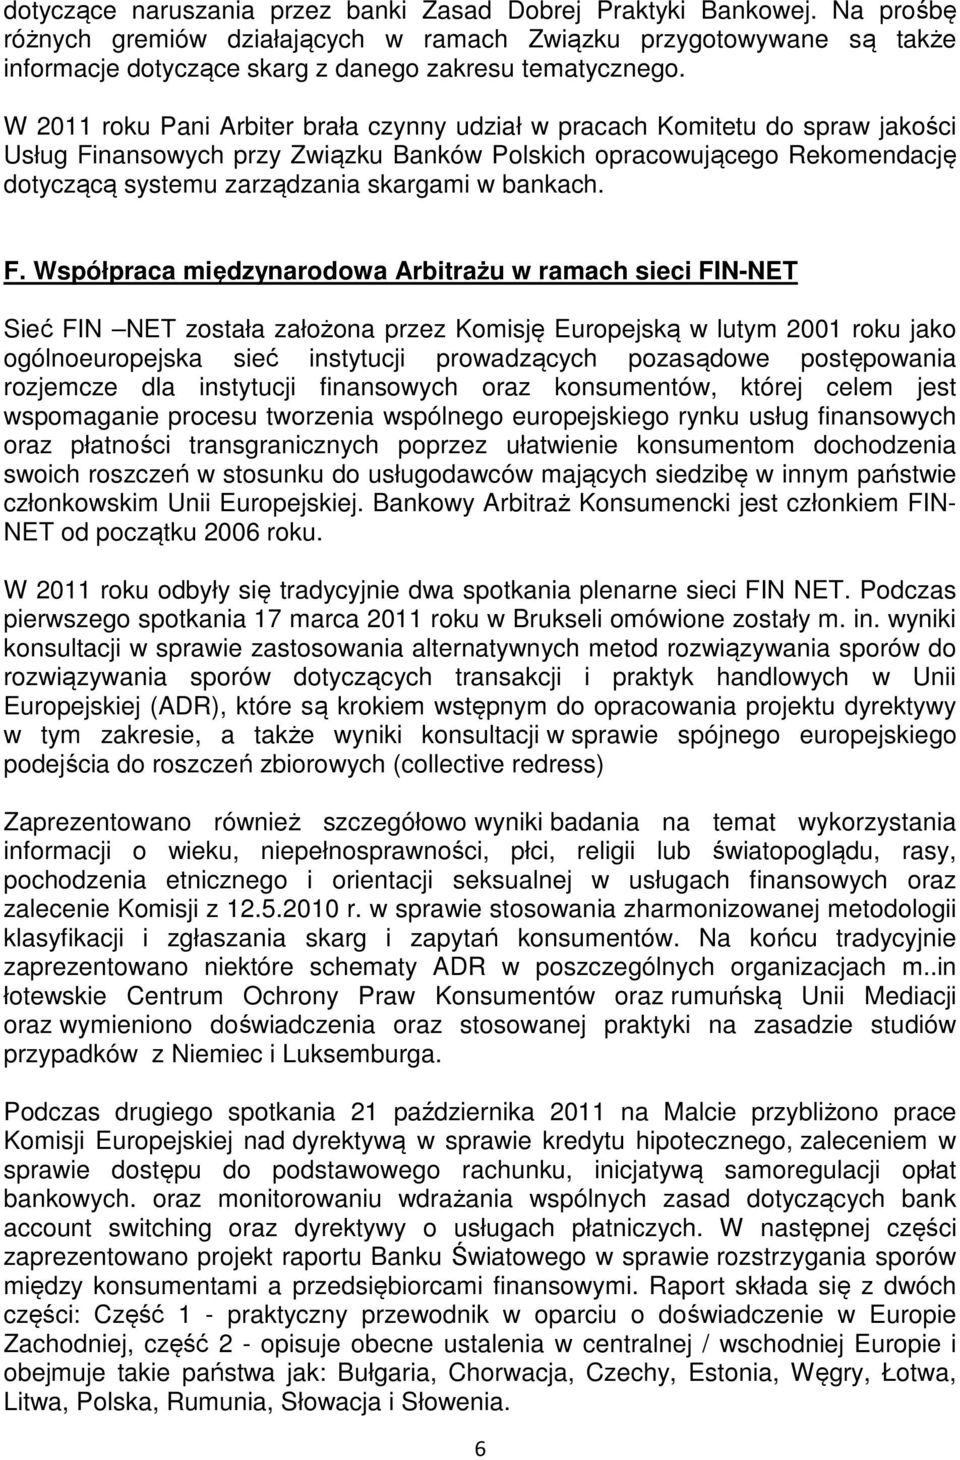 W 2011 roku Pani Arbiter brała czynny udział w pracach Komitetu do spraw jakości Usług Finansowych przy Związku Banków Polskich opracowującego Rekomendację dotyczącą systemu zarządzania skargami w